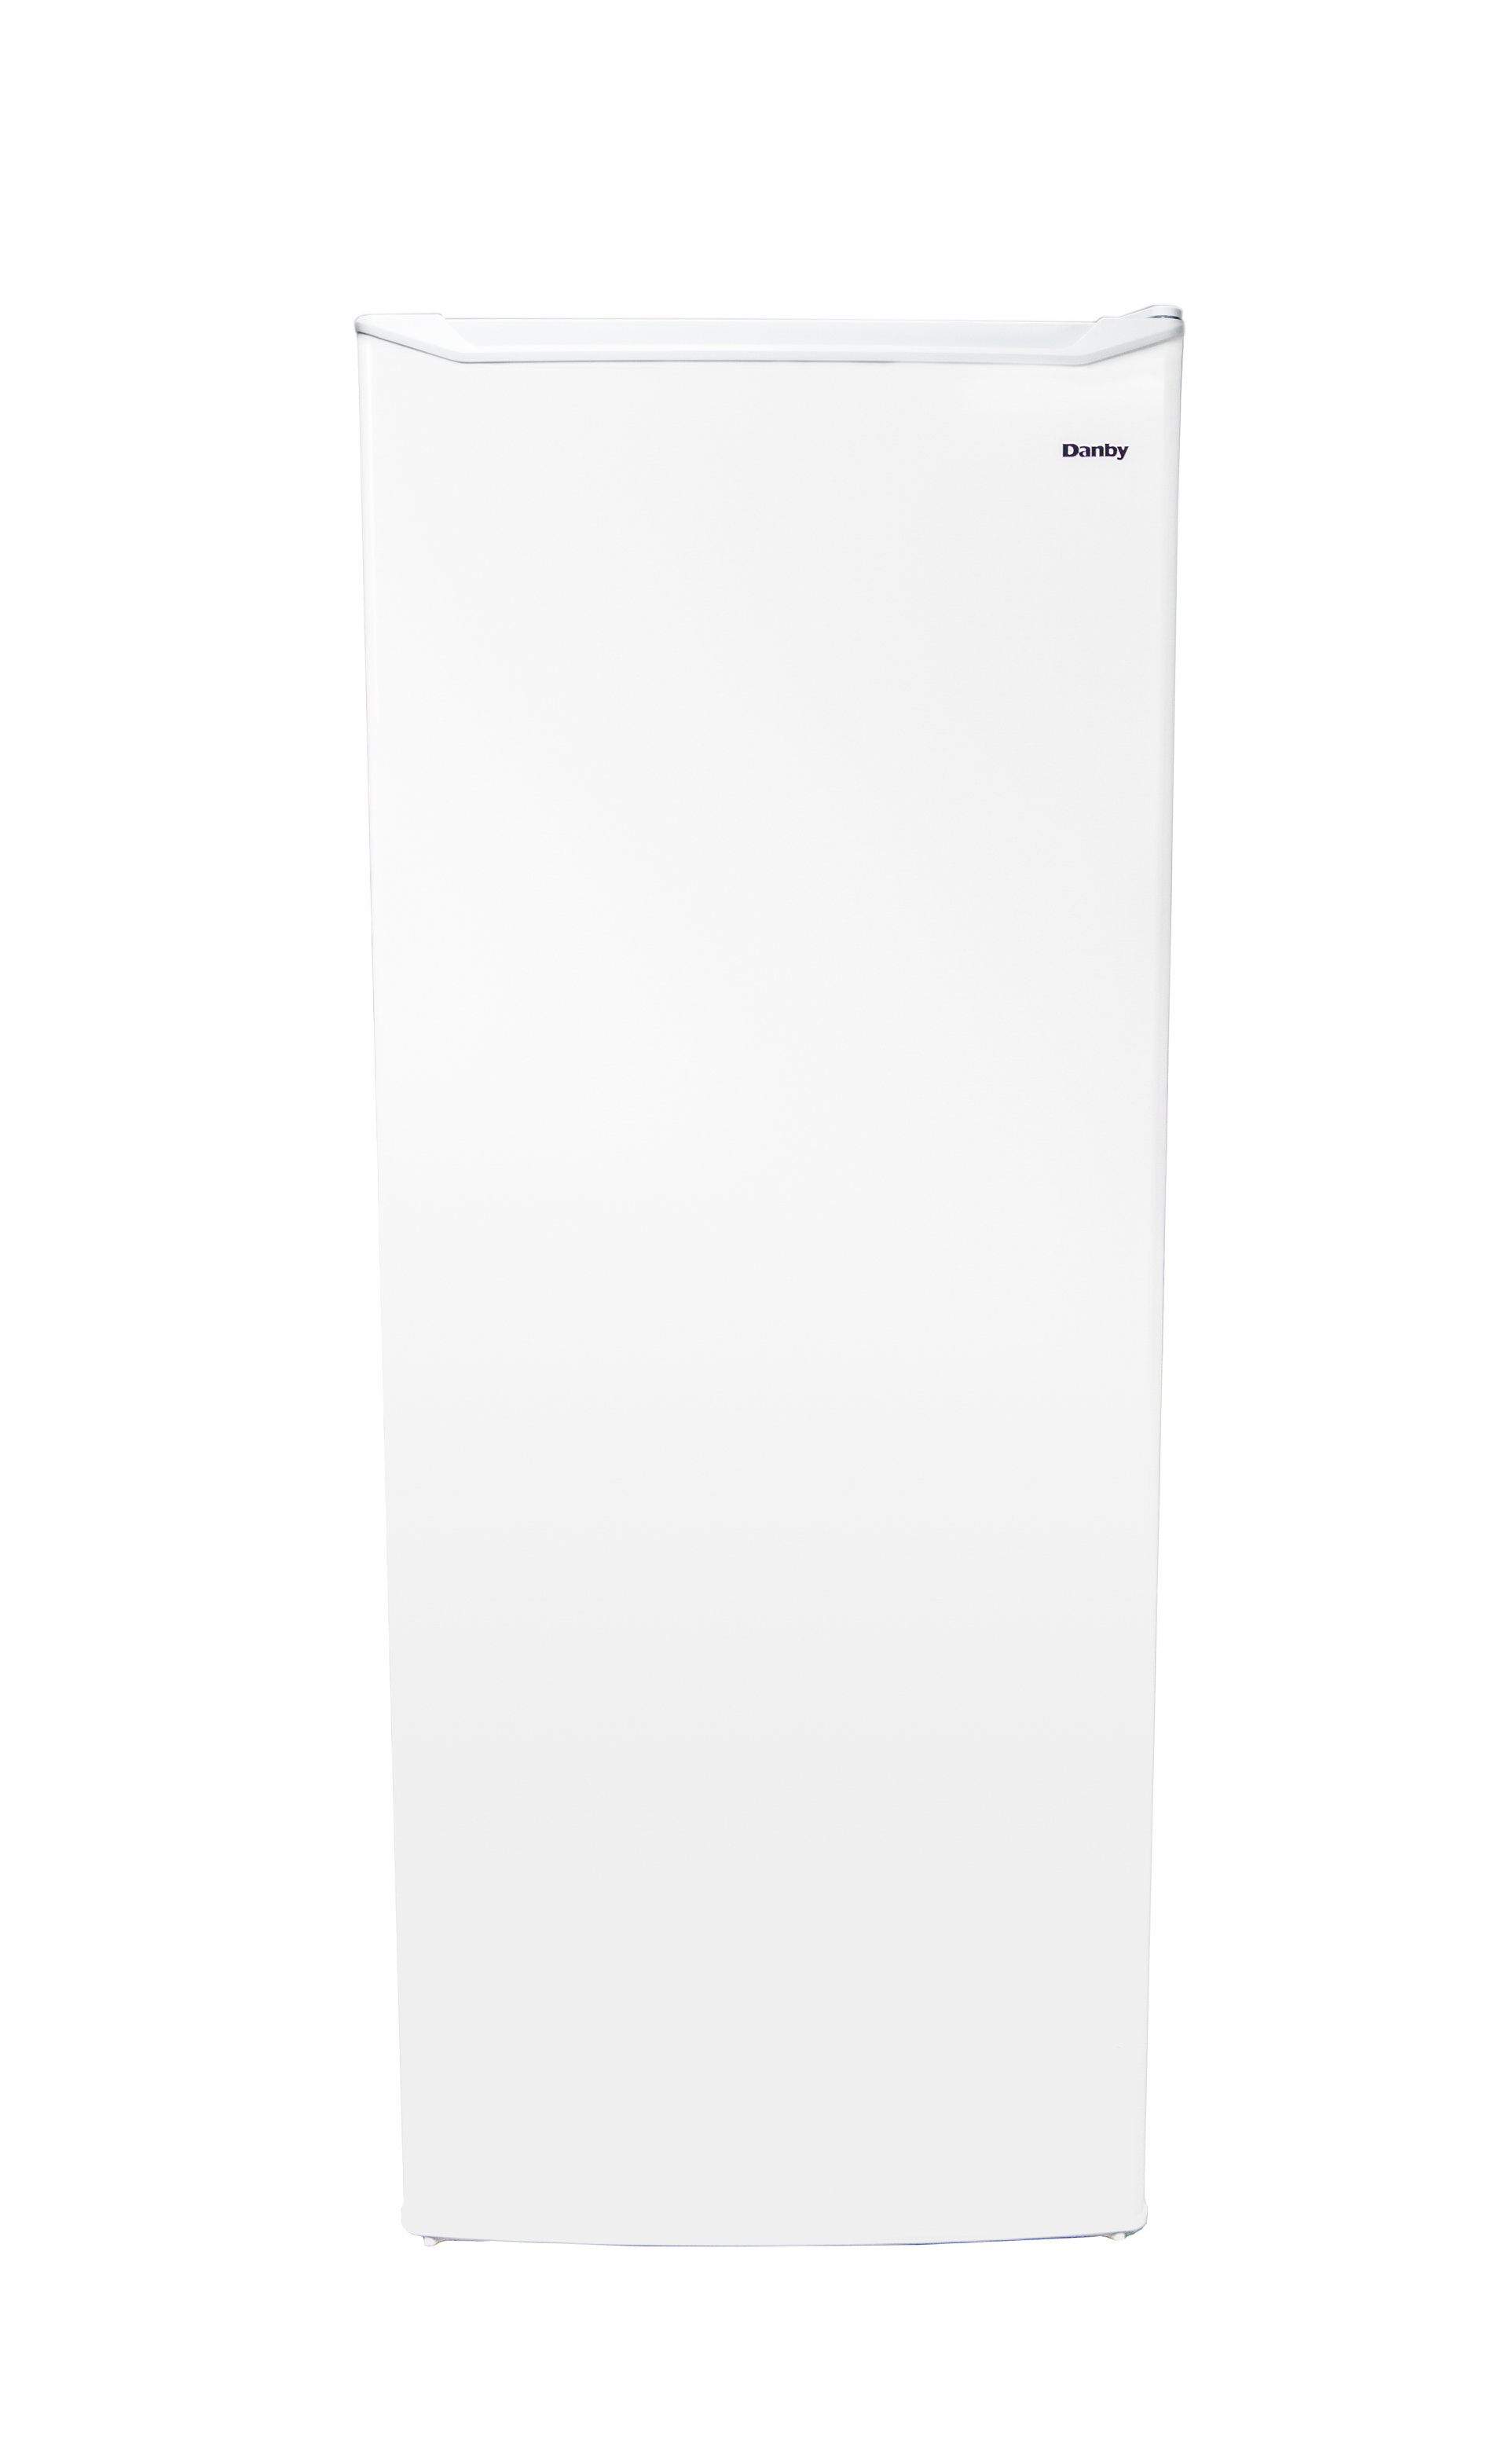 Danby 5.9 cu. ft. Upright Freezer in White - DUFM059C1WDD